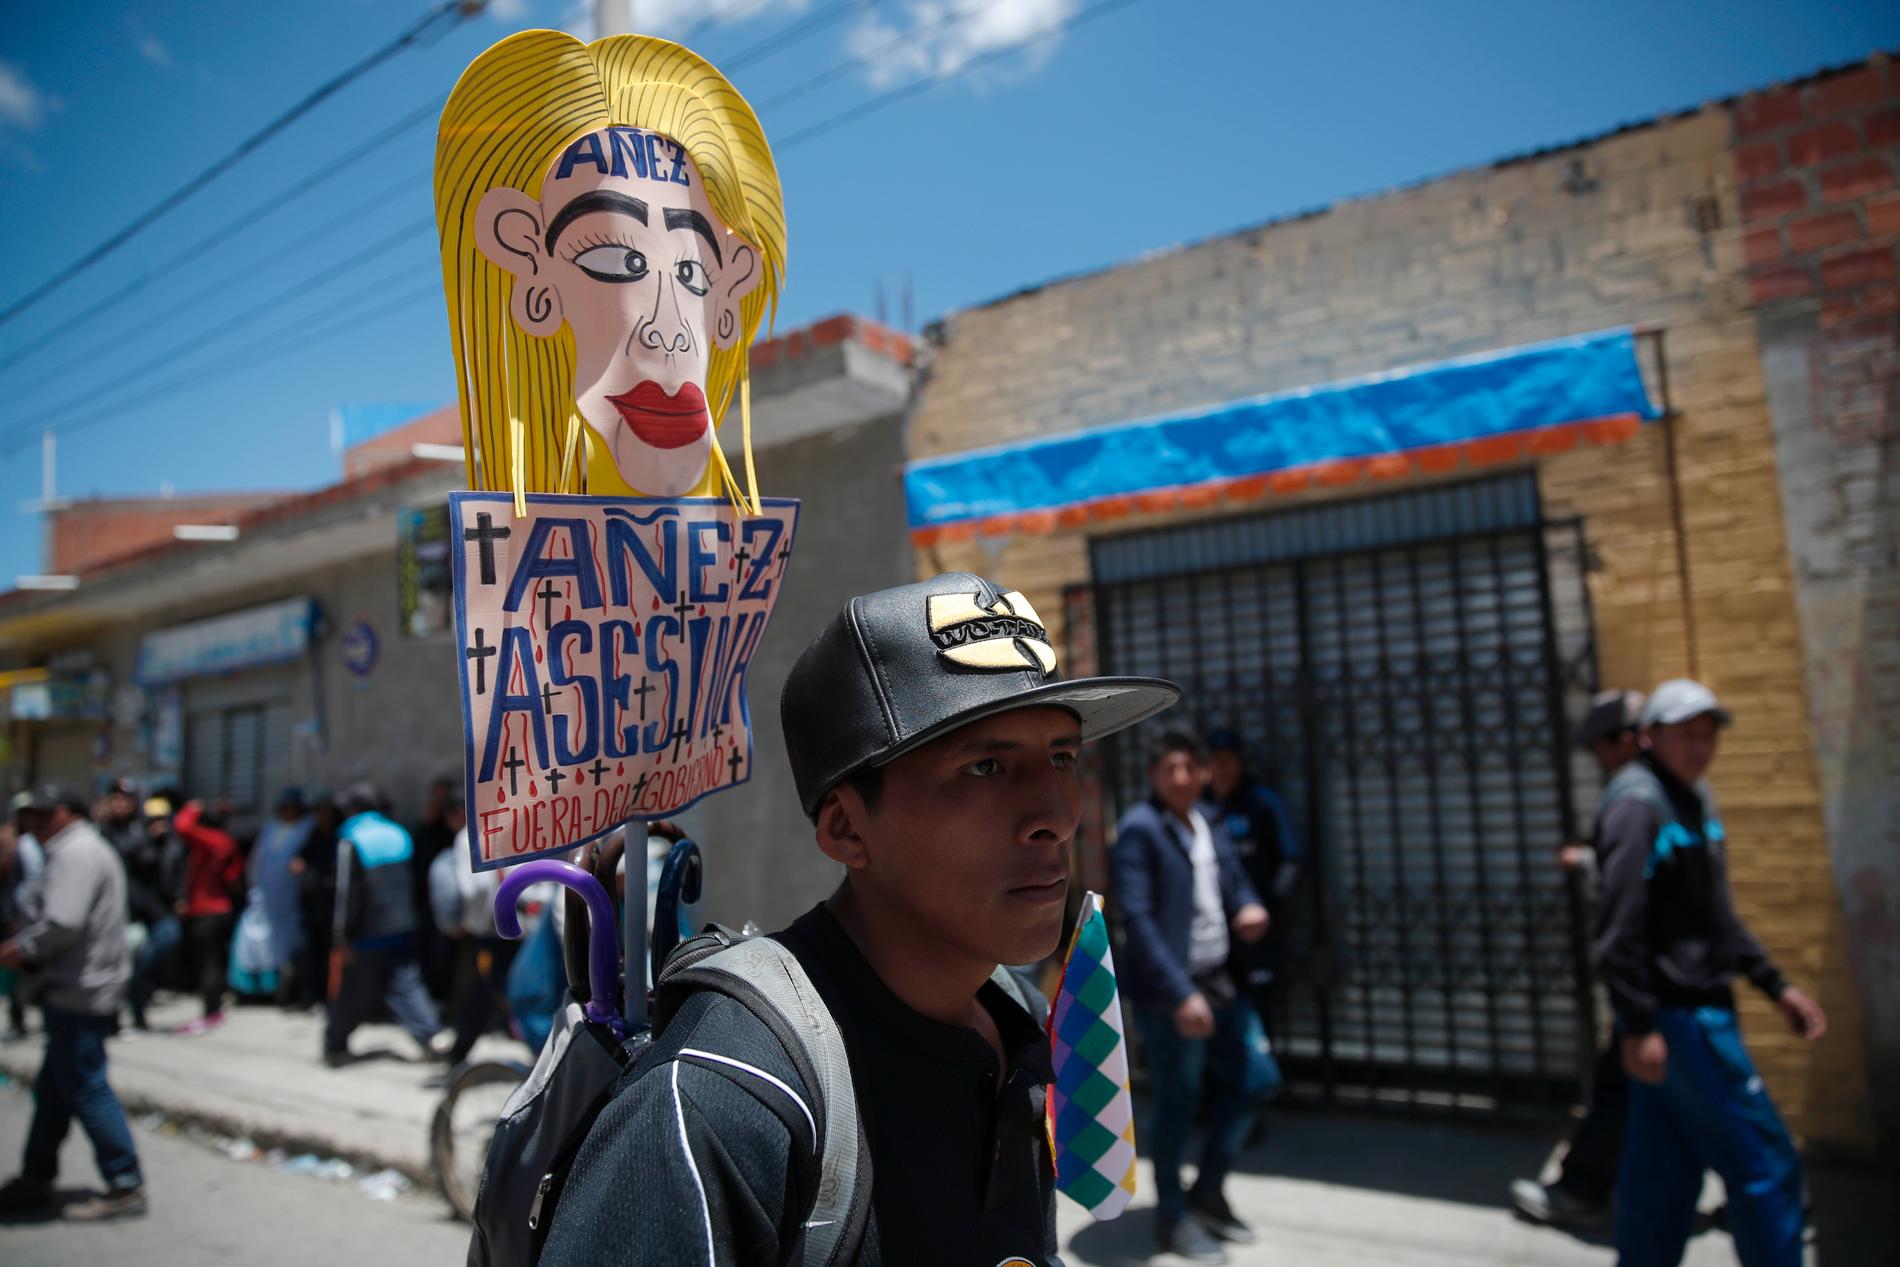 En anhängare till den tidigare presidenten Evo Morales håller ett plakat med texten "Jeanine Áñez lönnmördare, försvinn" under en demonstration i El Alto utanför huvudstaden La Paz.